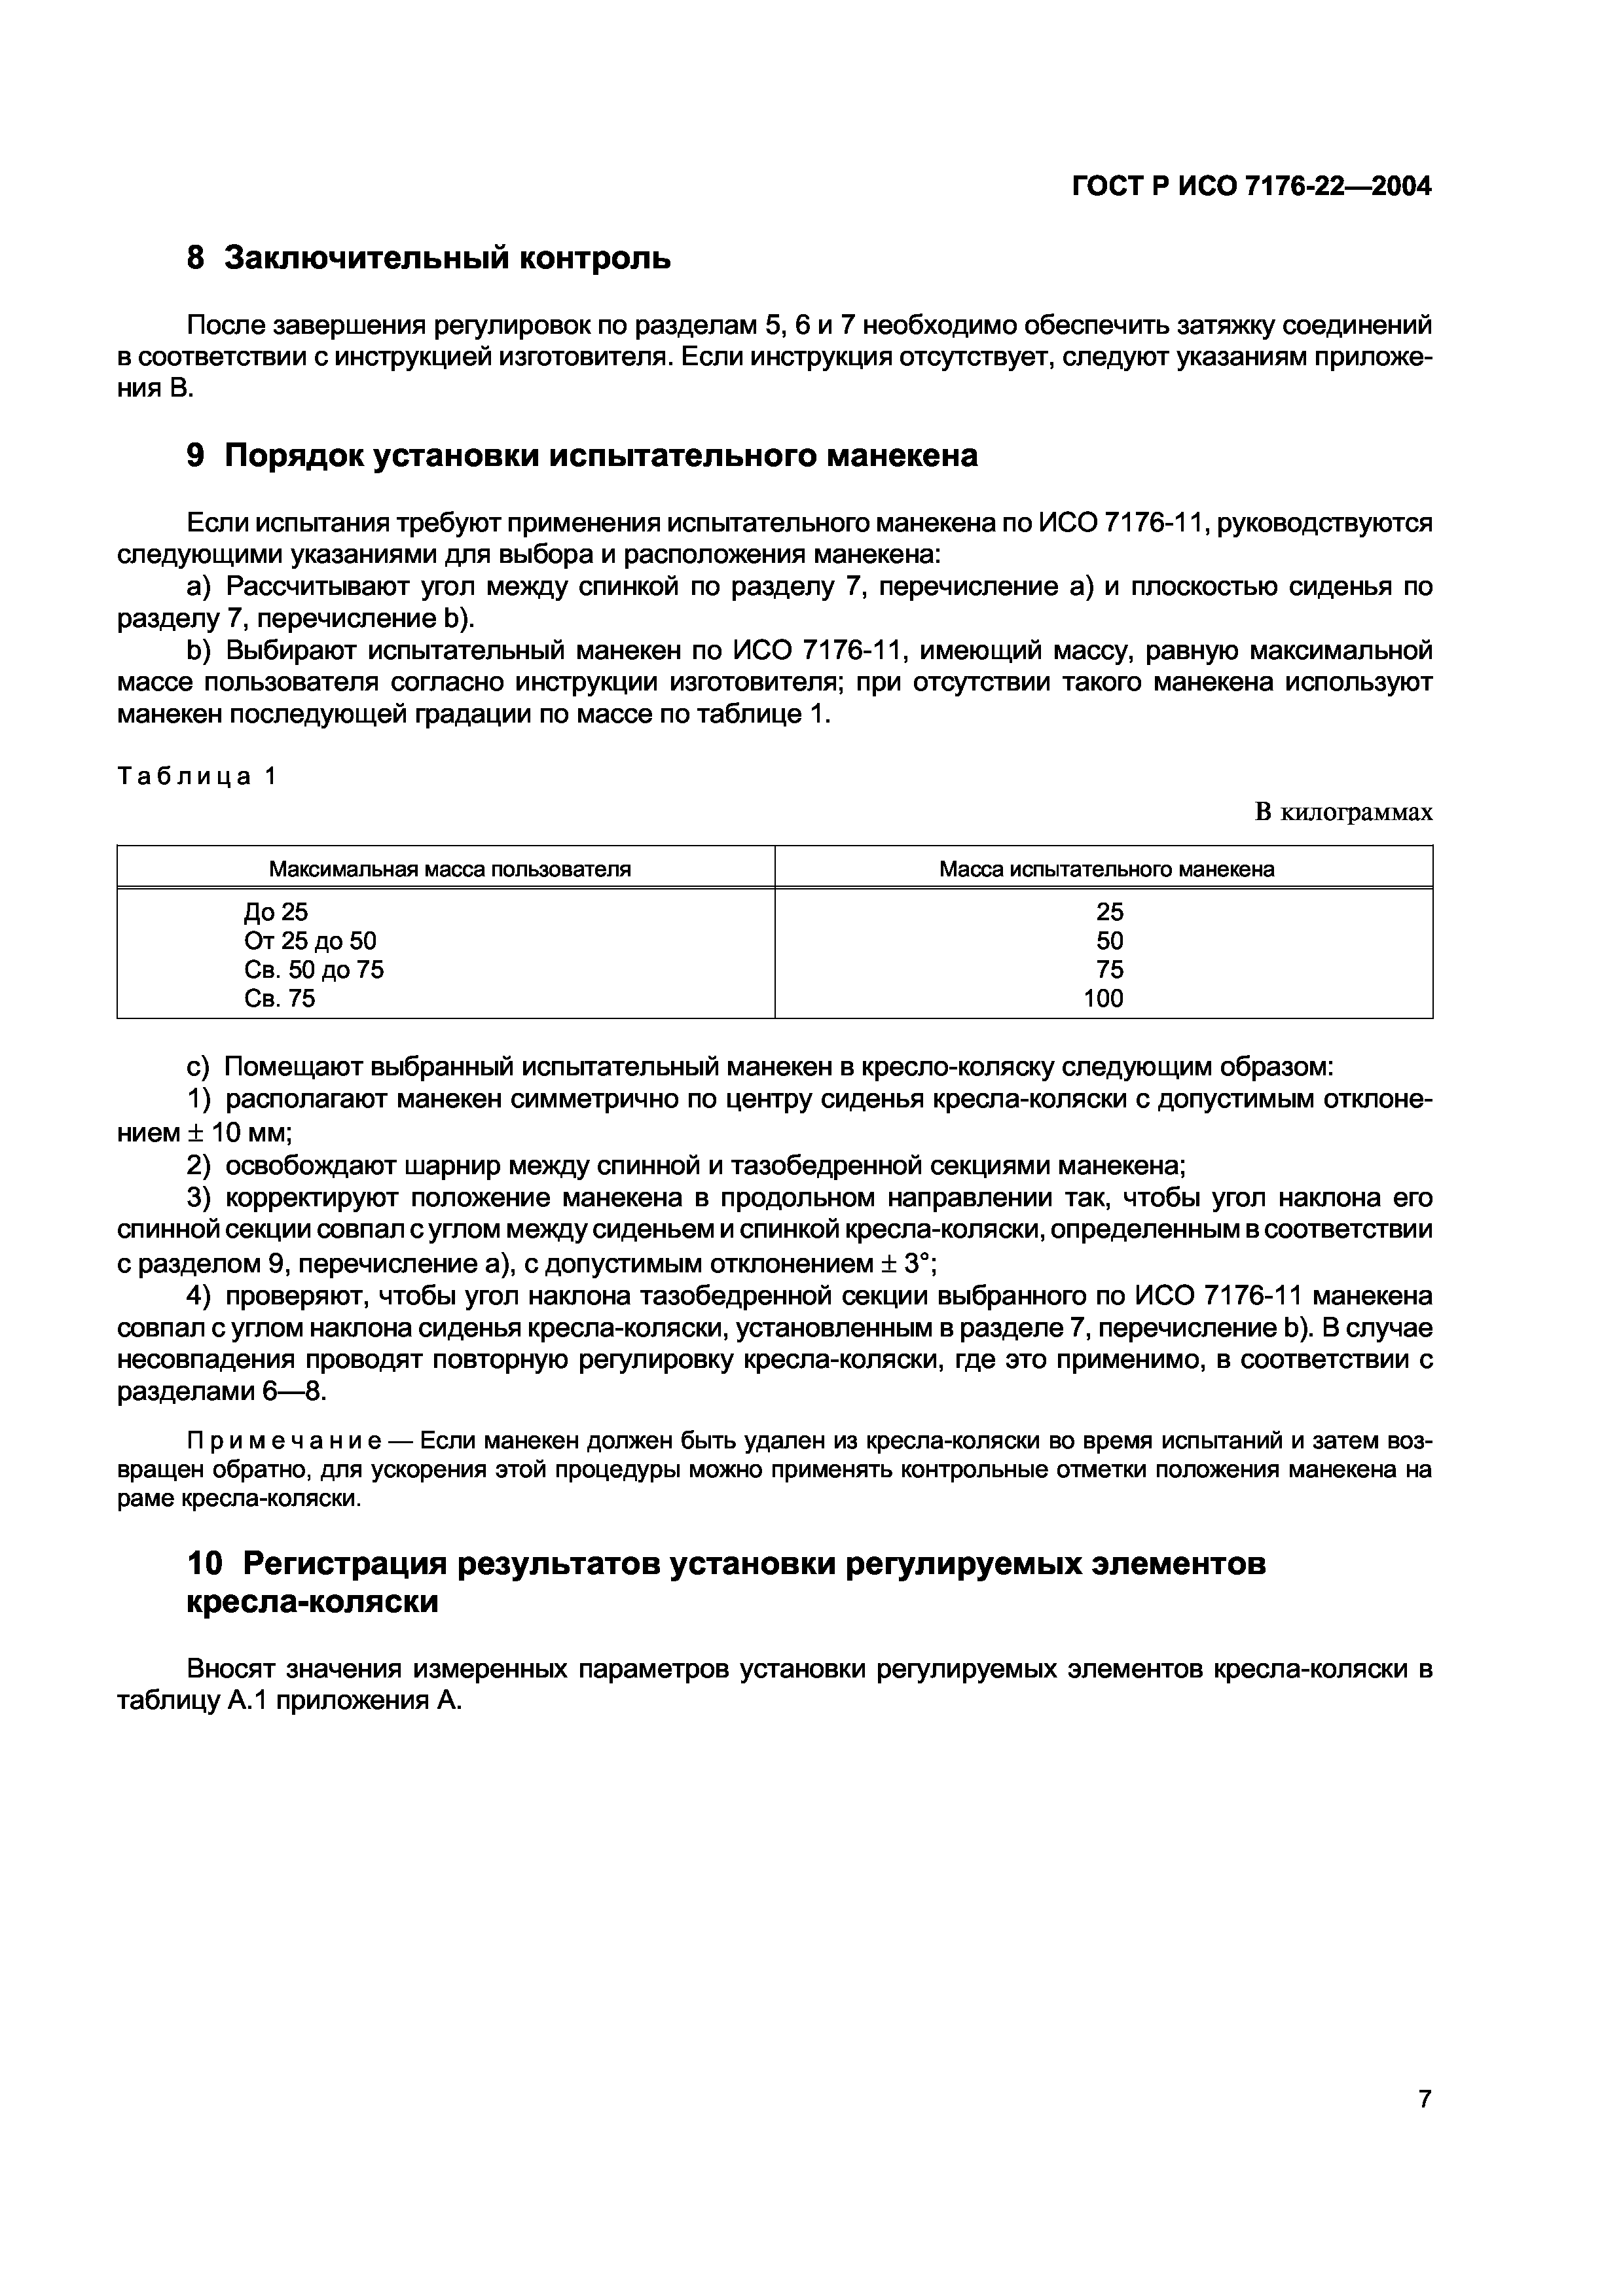 ГОСТ Р ИСО 7176-22-2004